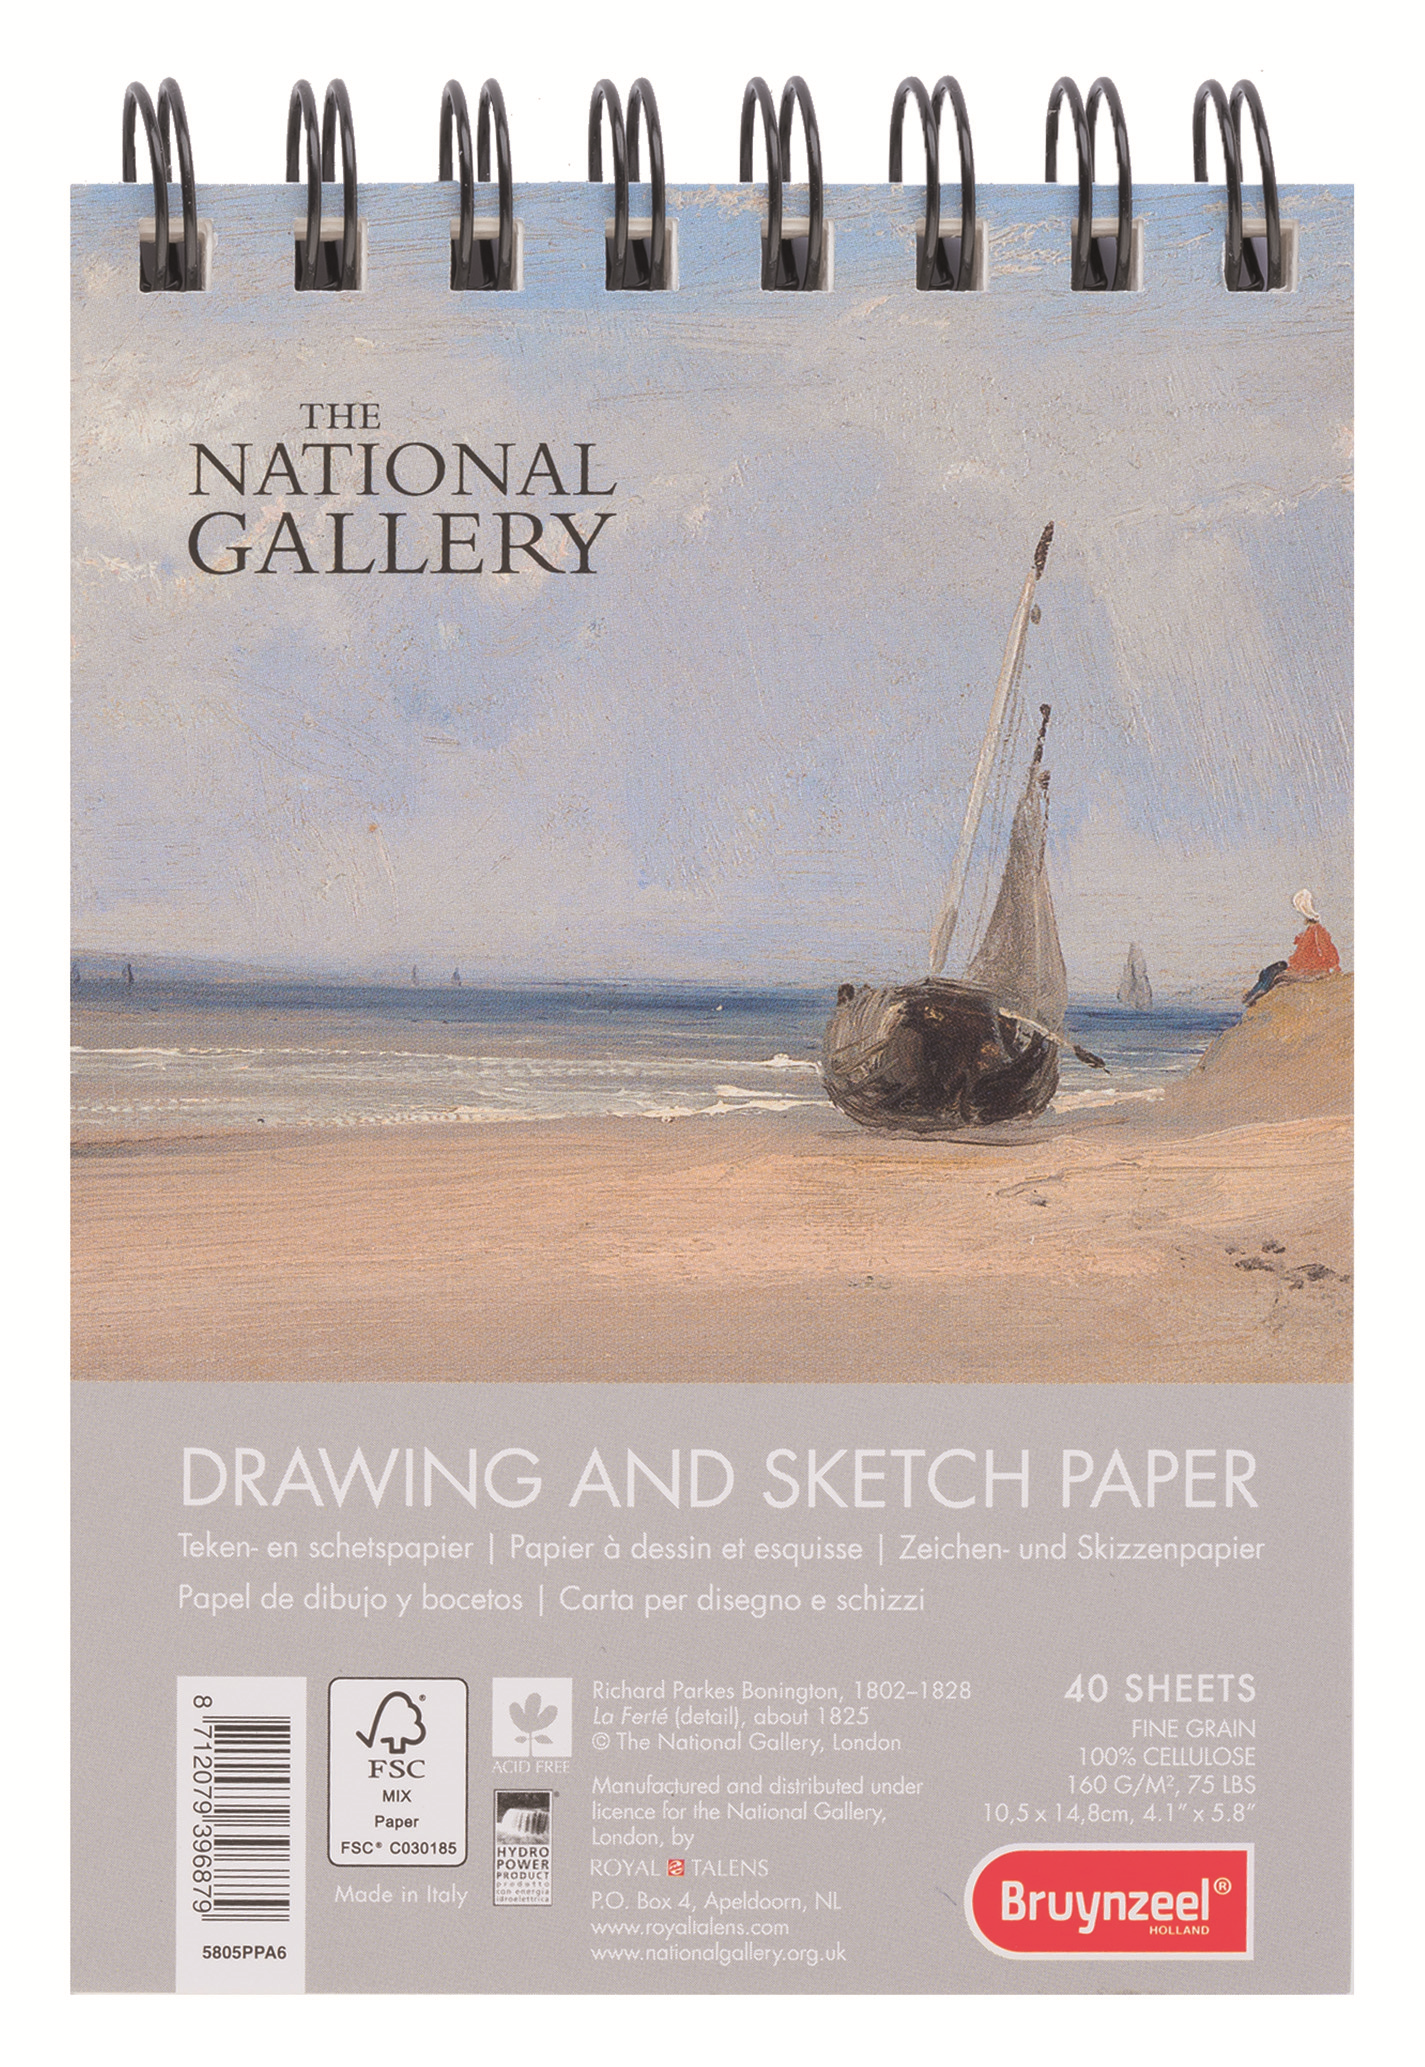 Bruynzeel Альбом для зарисовок National Gallery 40 листов формат A6 5805PPA6